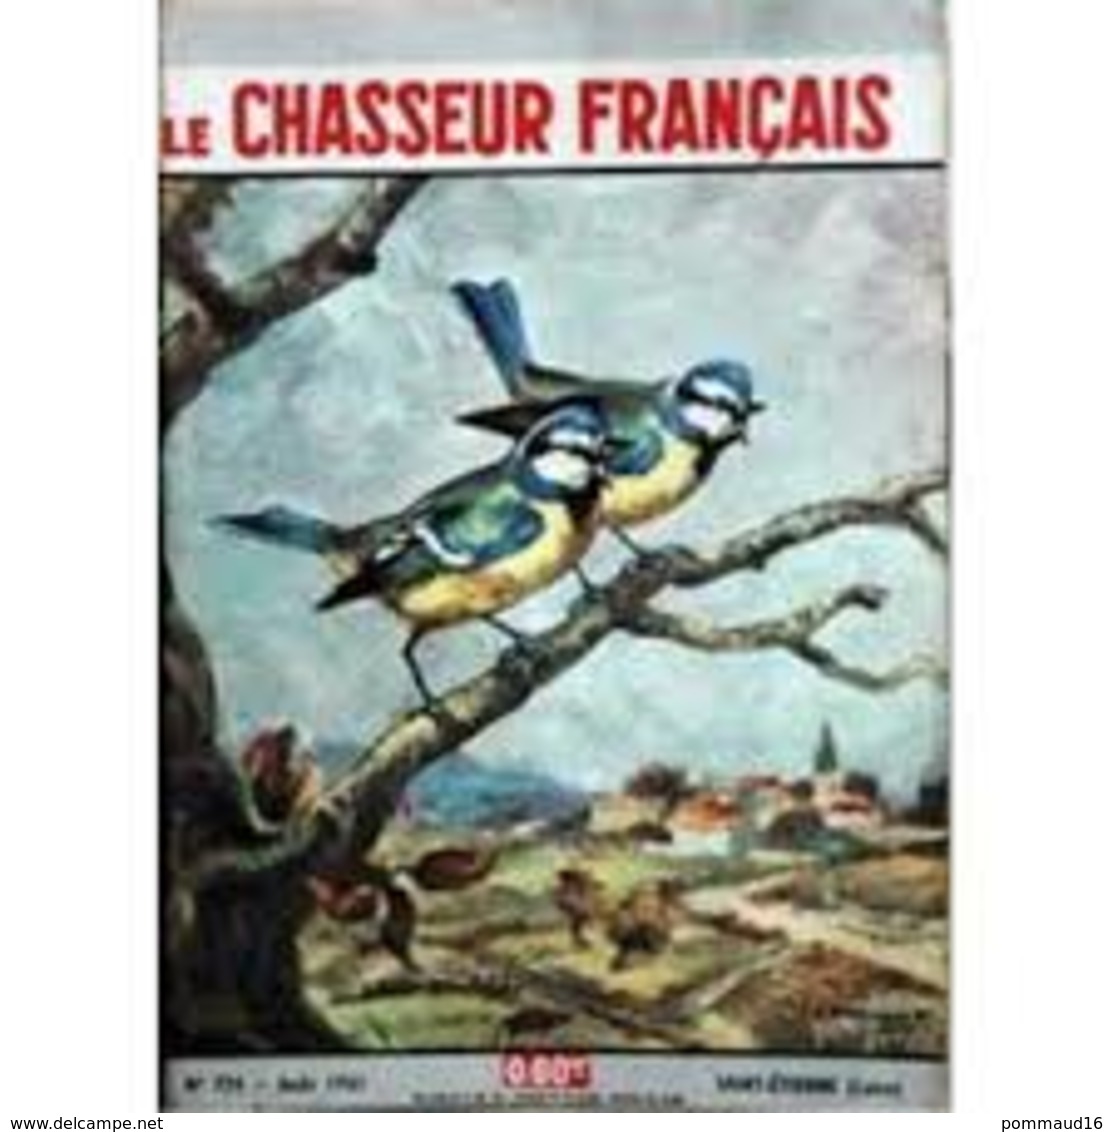 Le Chasseur Français N°774 Août 1961 - Caccia & Pesca